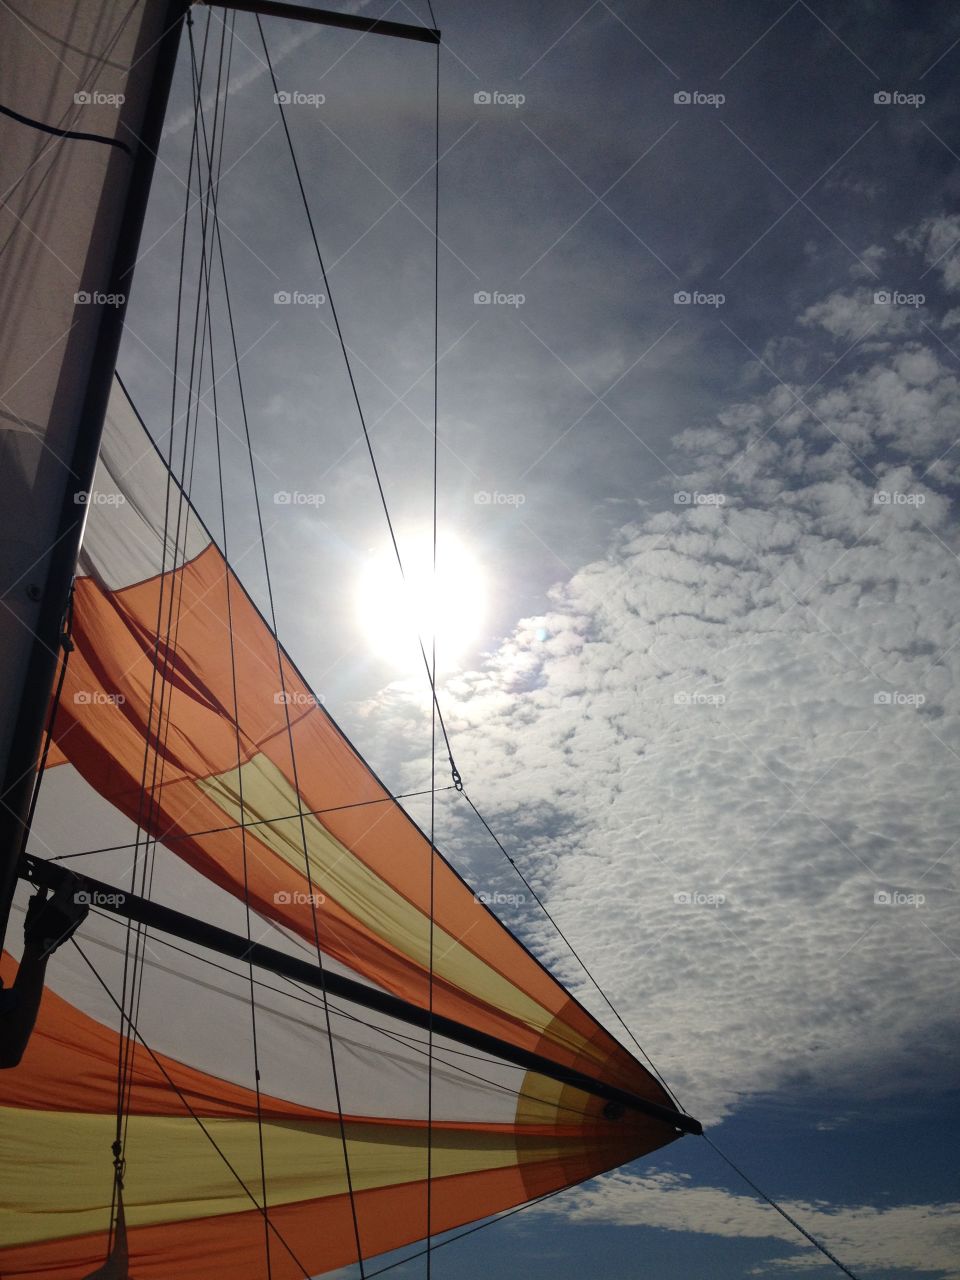 Spinnaker. Sailing on
Lake Ontario
Oswego, NY
June, 2015 